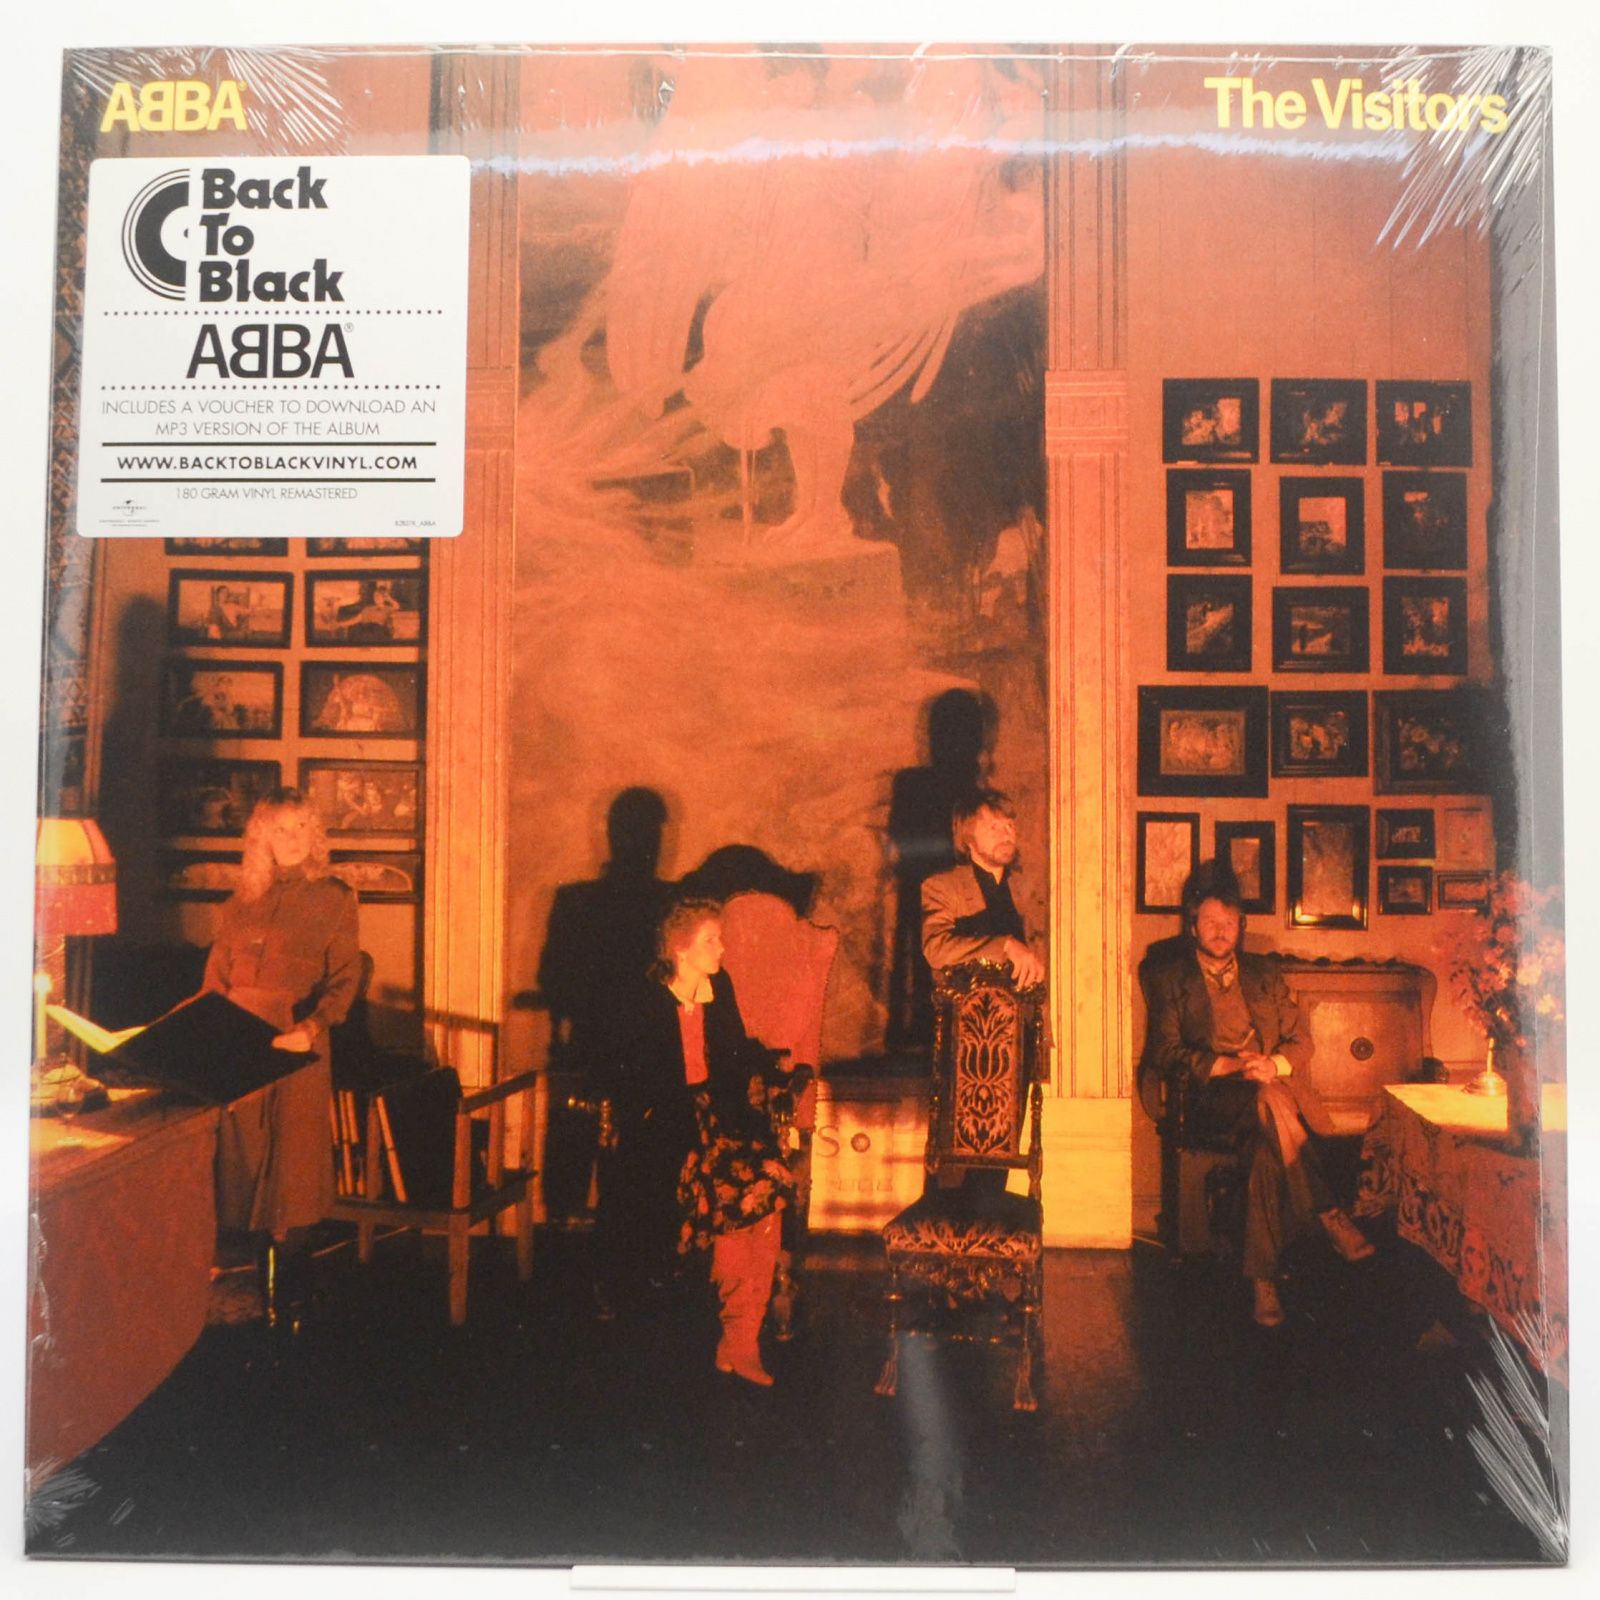 ABBA — The Visitors, 2011